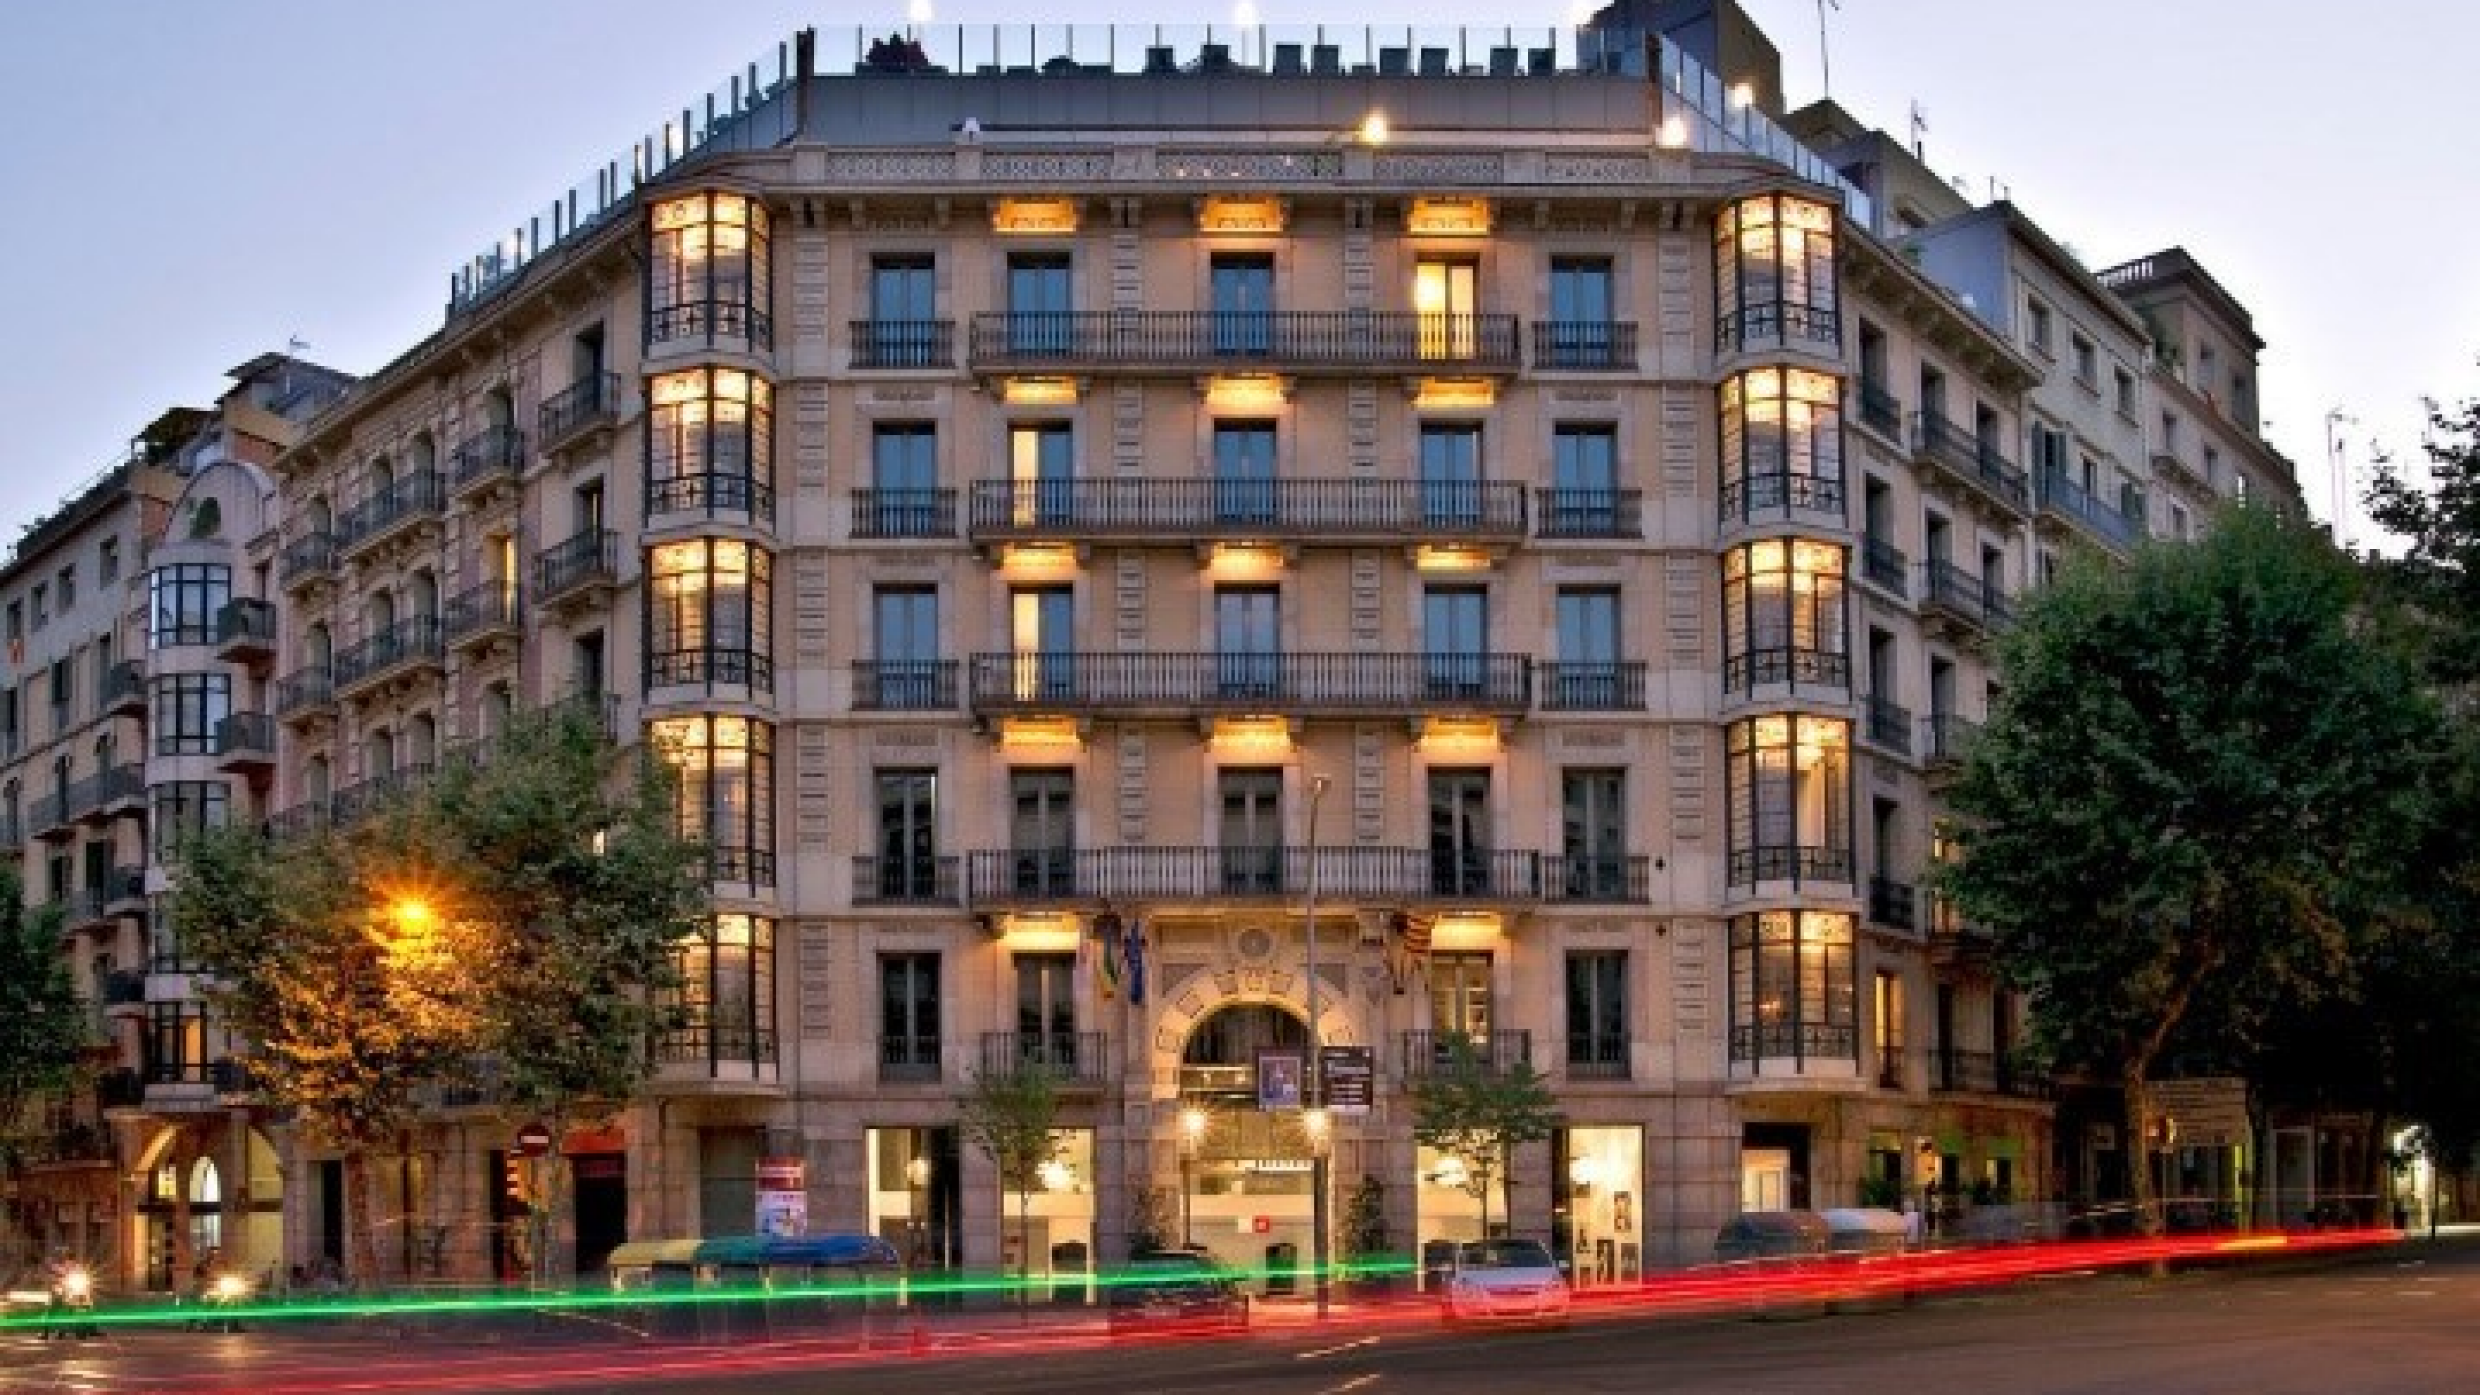 Axel hotel facade